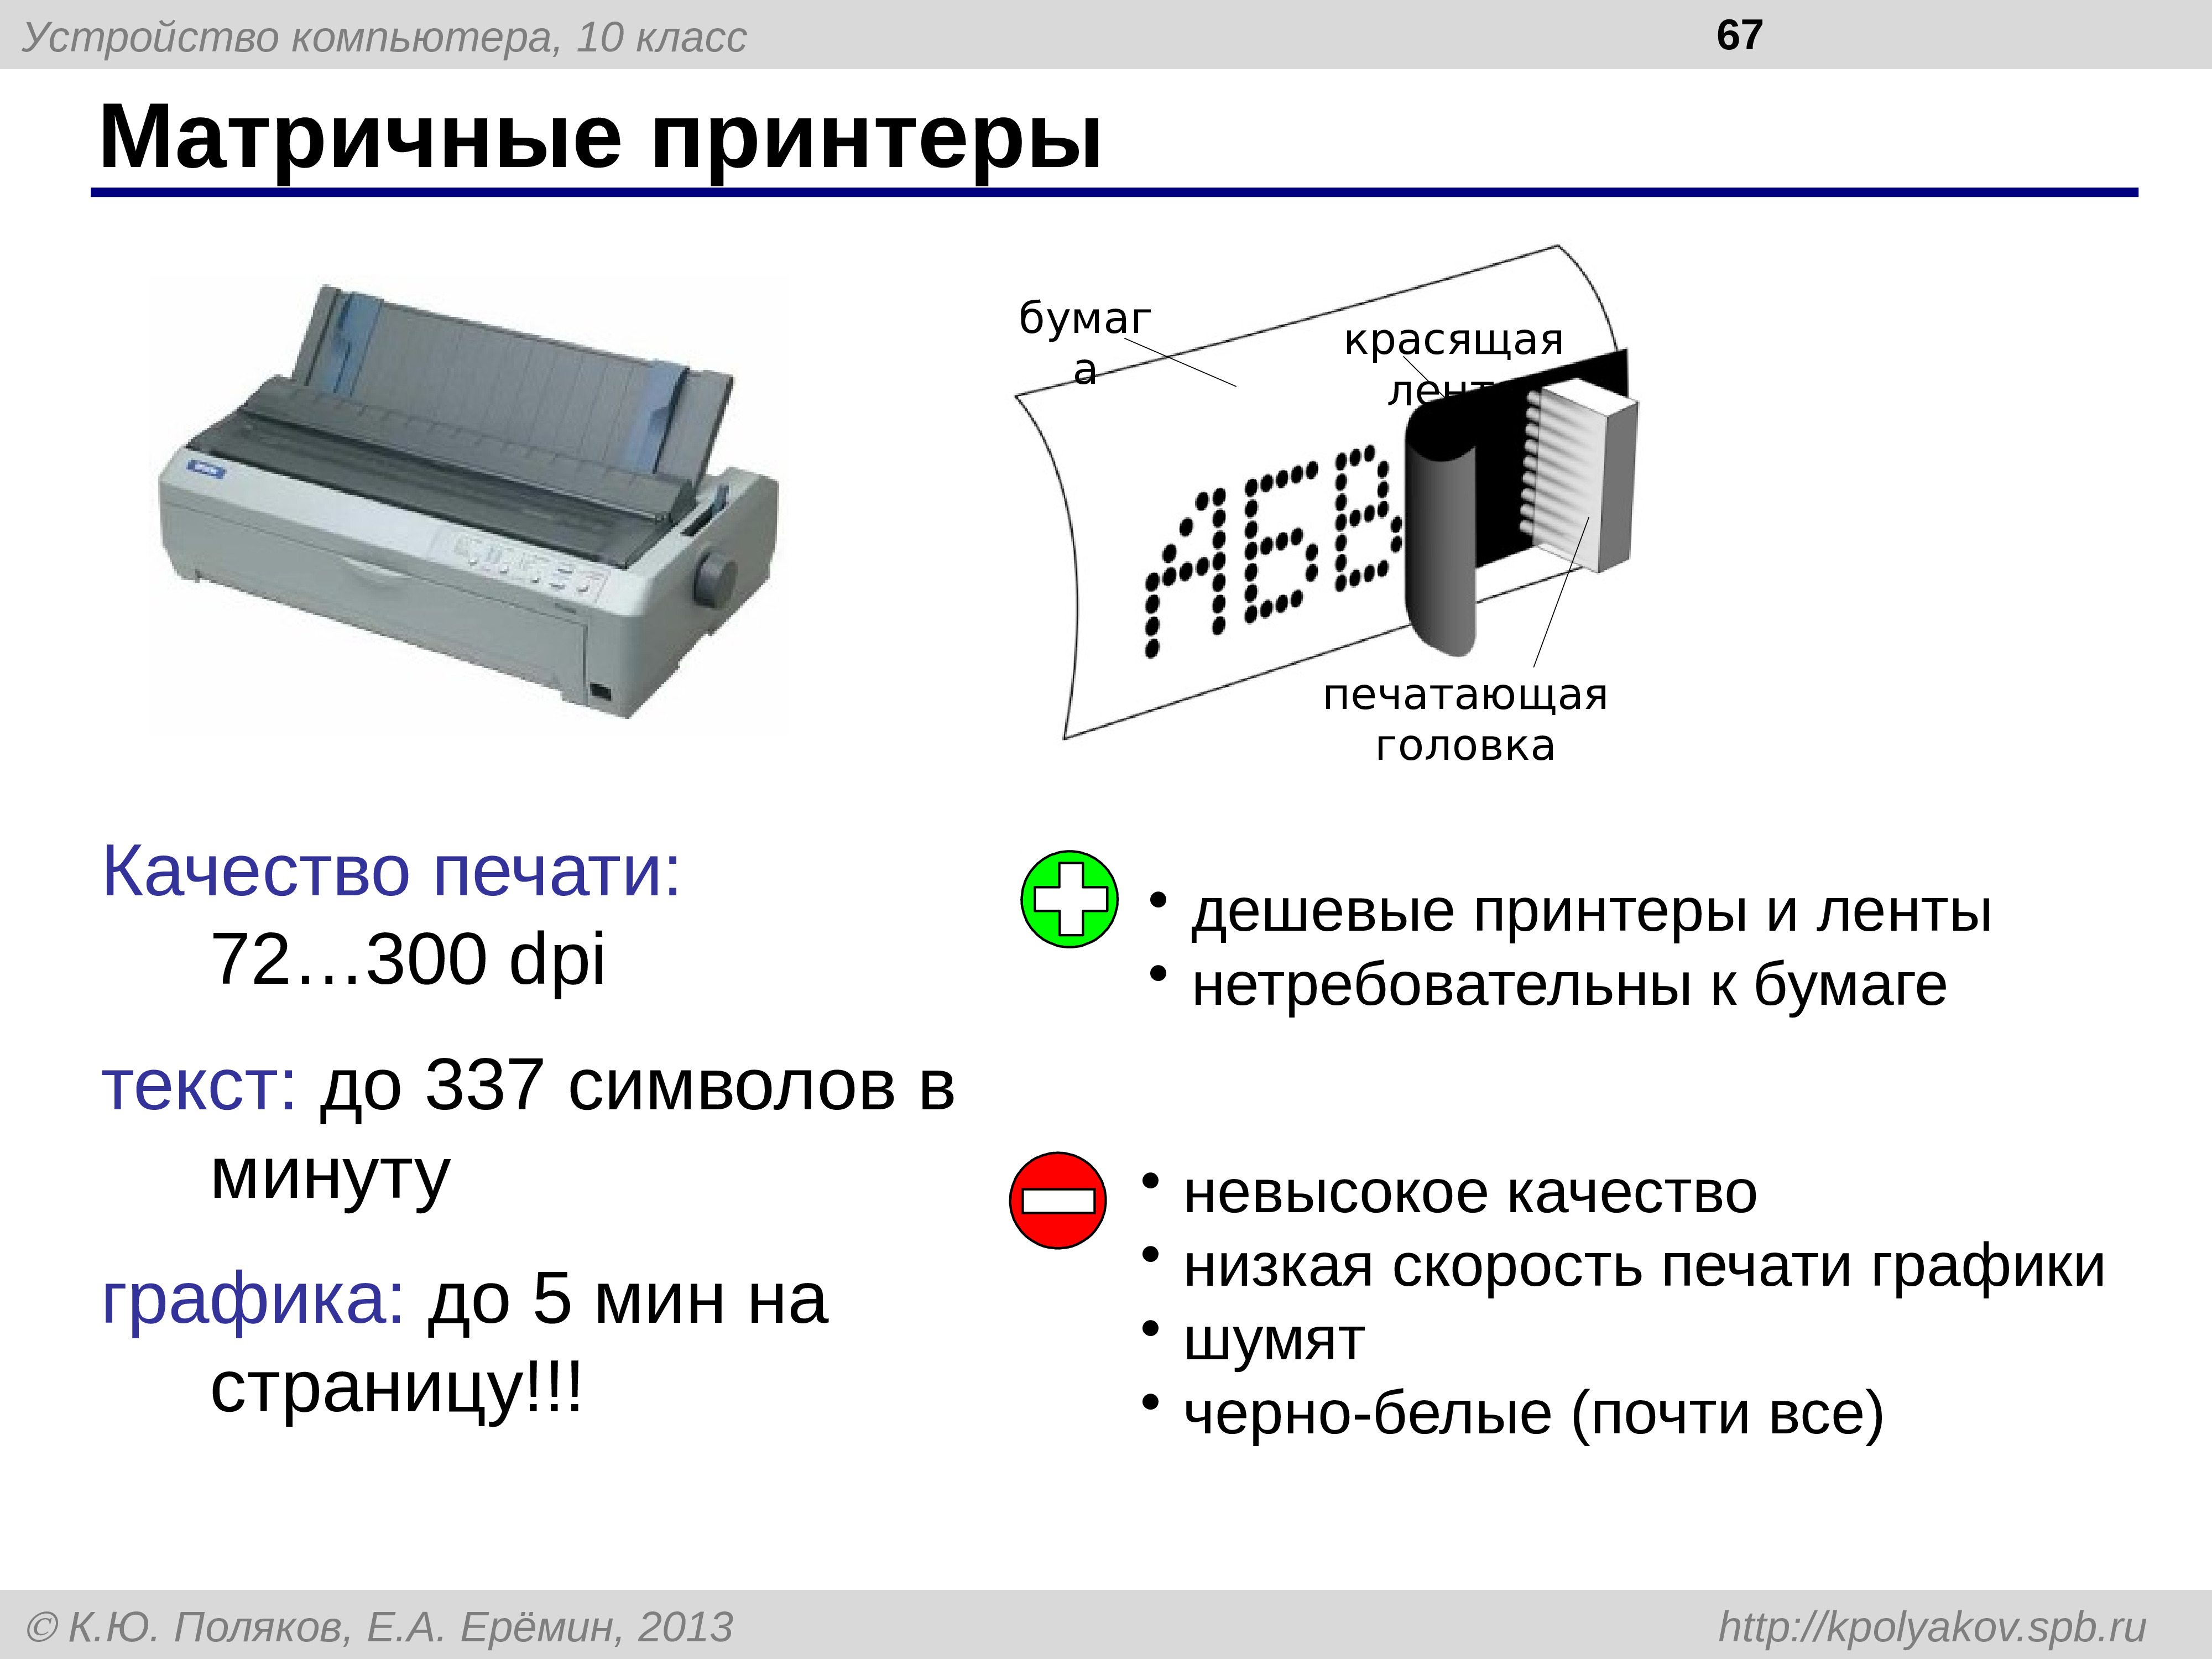 Votv printer